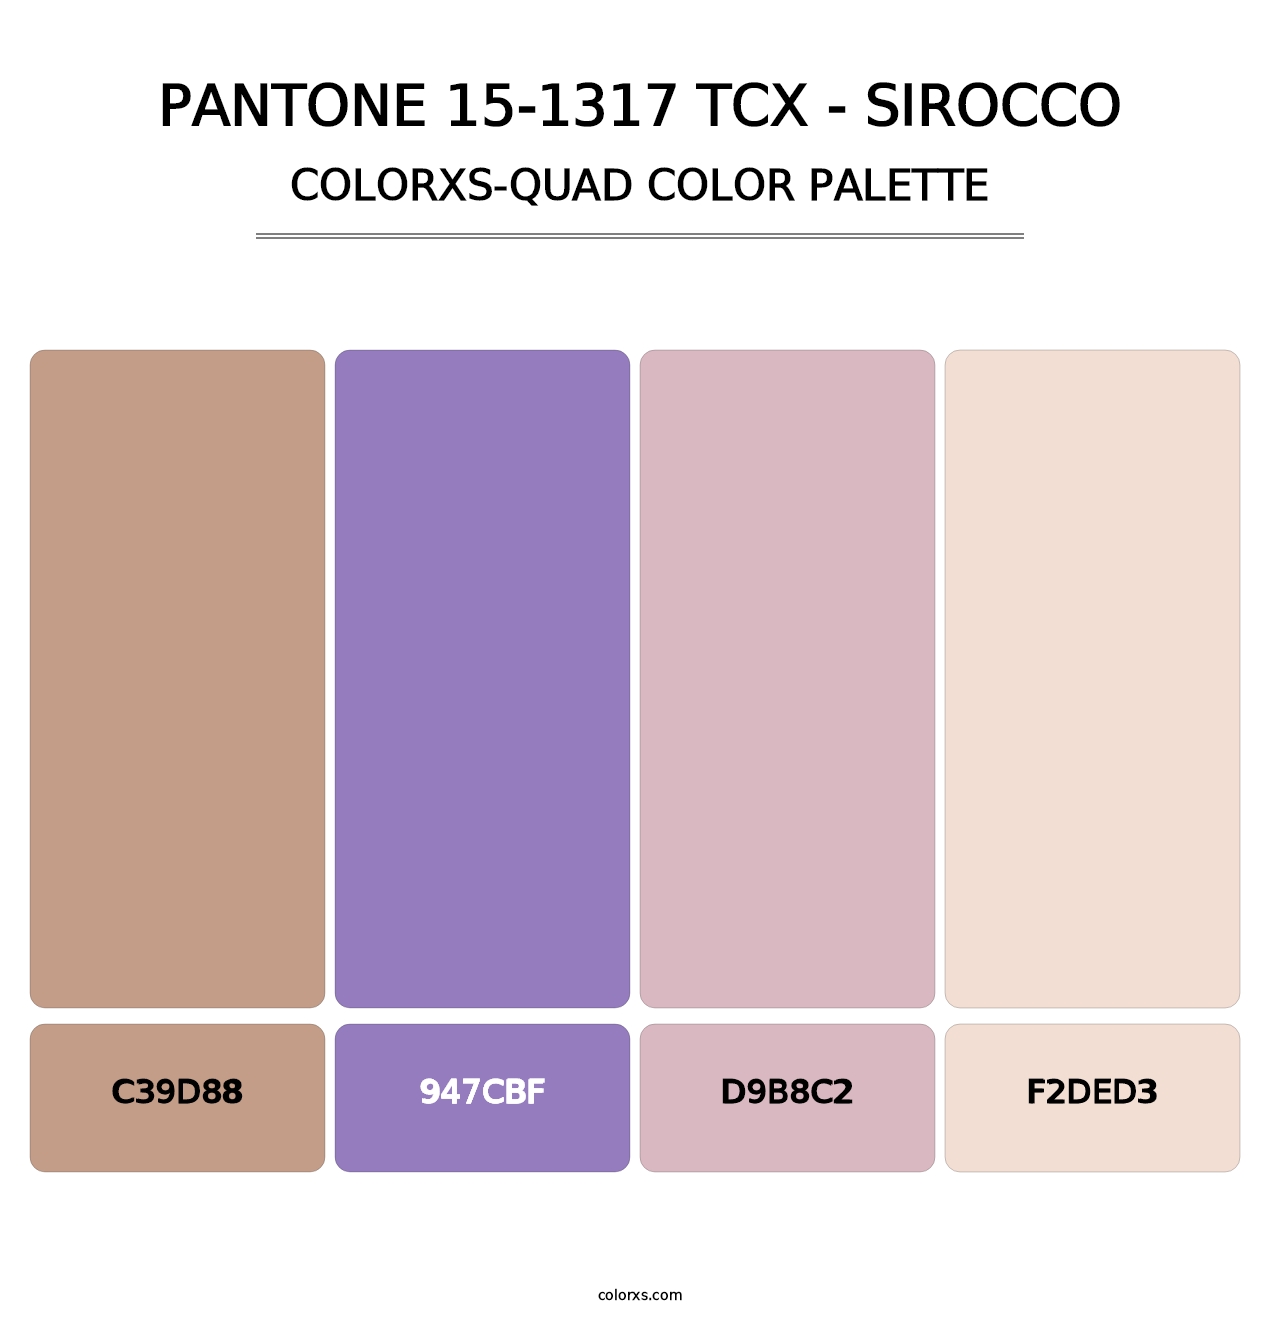 PANTONE 15-1317 TCX - Sirocco - Colorxs Quad Palette